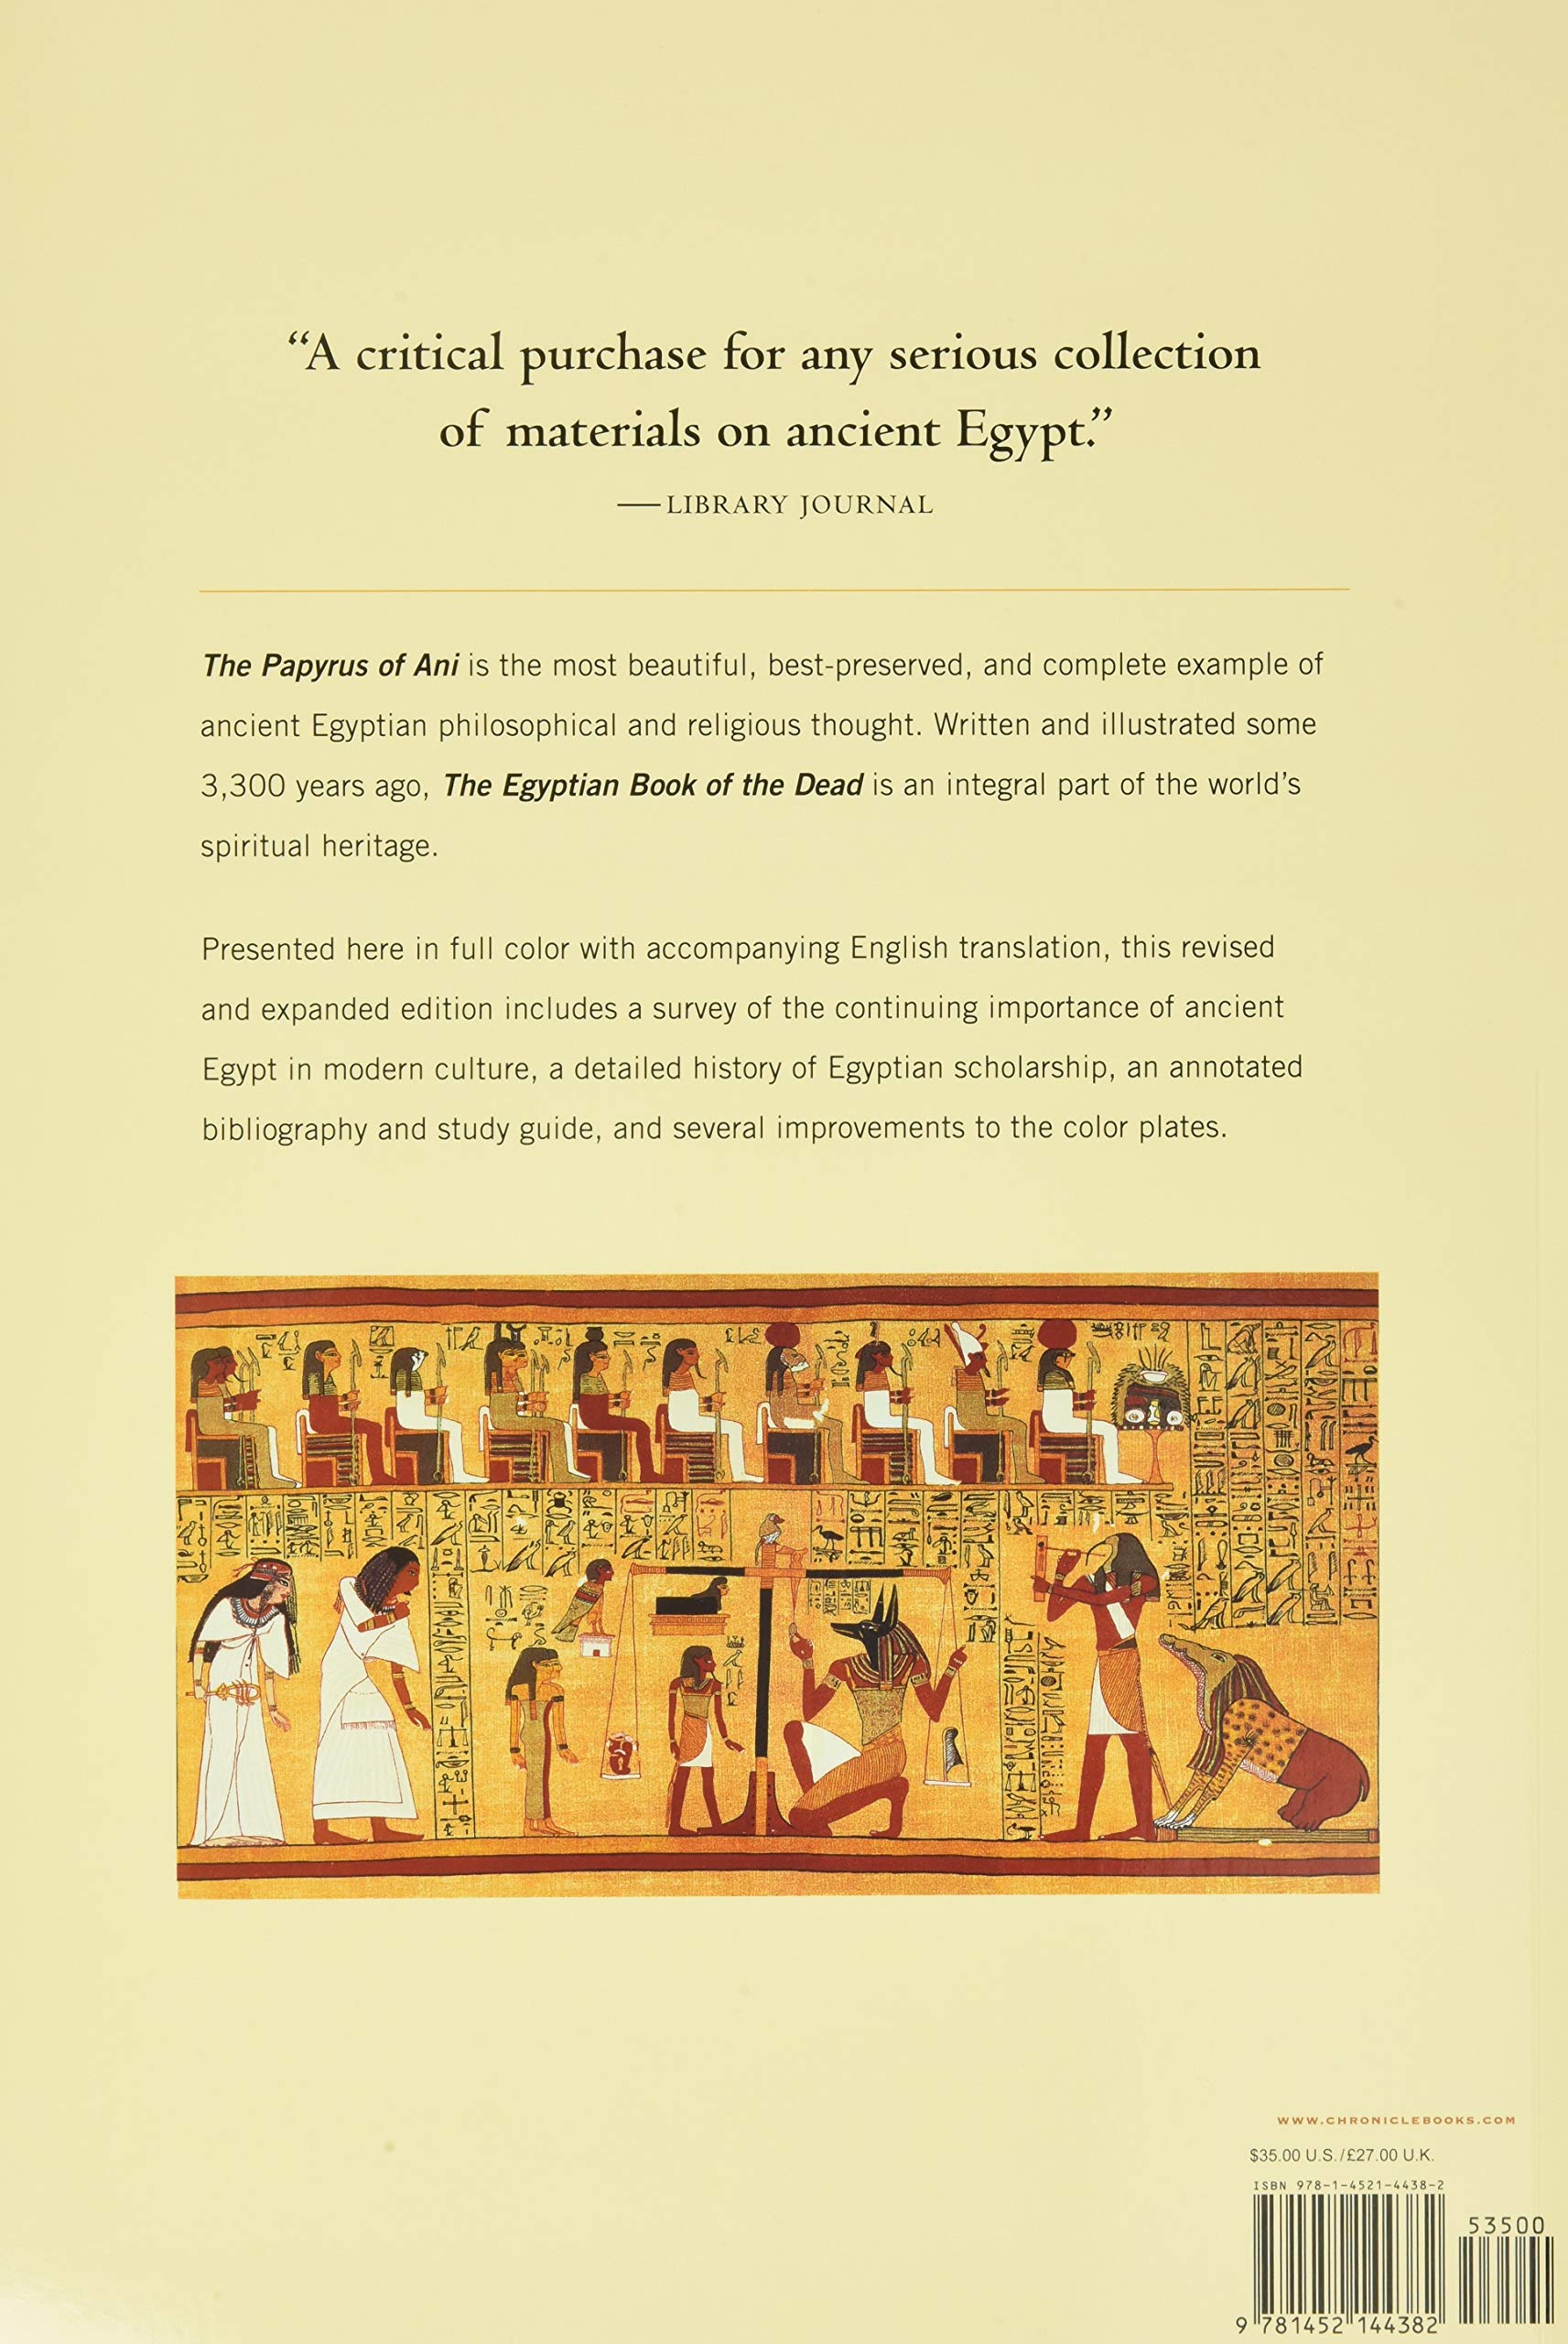 Egyptian Book of the Dead: Bạn có muốn khám phá bí mật của cuốn sách Đông Phương Mạch Lạc và tìm hiểu về nền văn hóa Ai Cập cổ đại? Hãy xem hình ảnh liên quan đến Egyptian Book of the Dead, đó là một trong những tài liệu quan trọng nhất về tôn giáo và tâm linh trong văn hóa Ai Cập cổ đại.